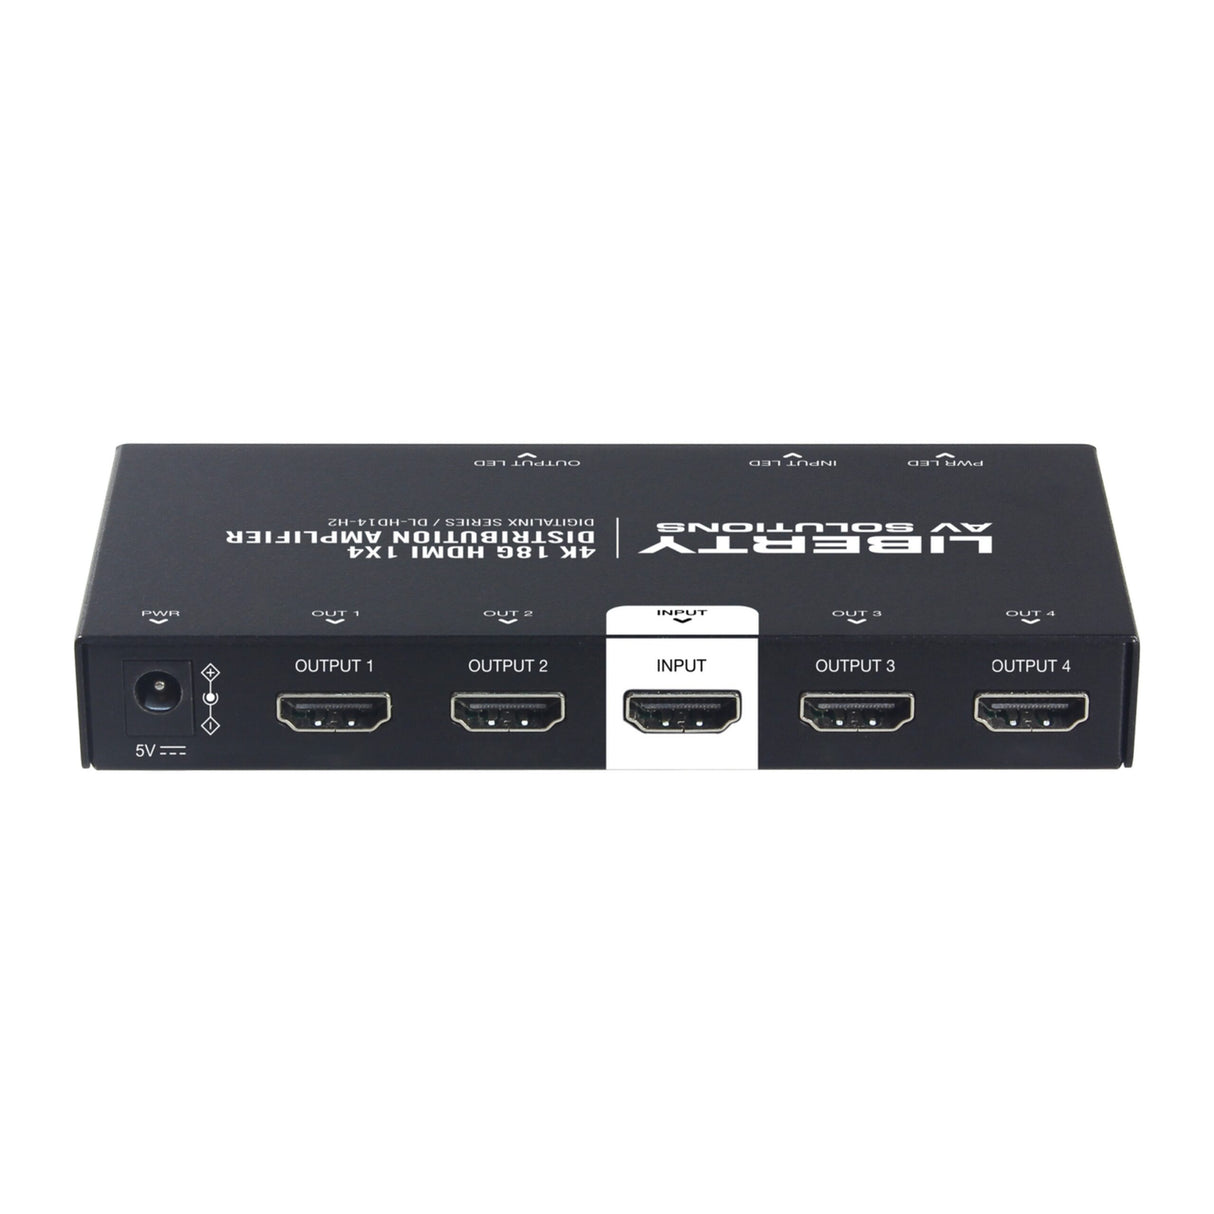 DigitaLinx DL-HD14-H2 18G 4K60 4:4:4 1 x 4 HDMI Splitter